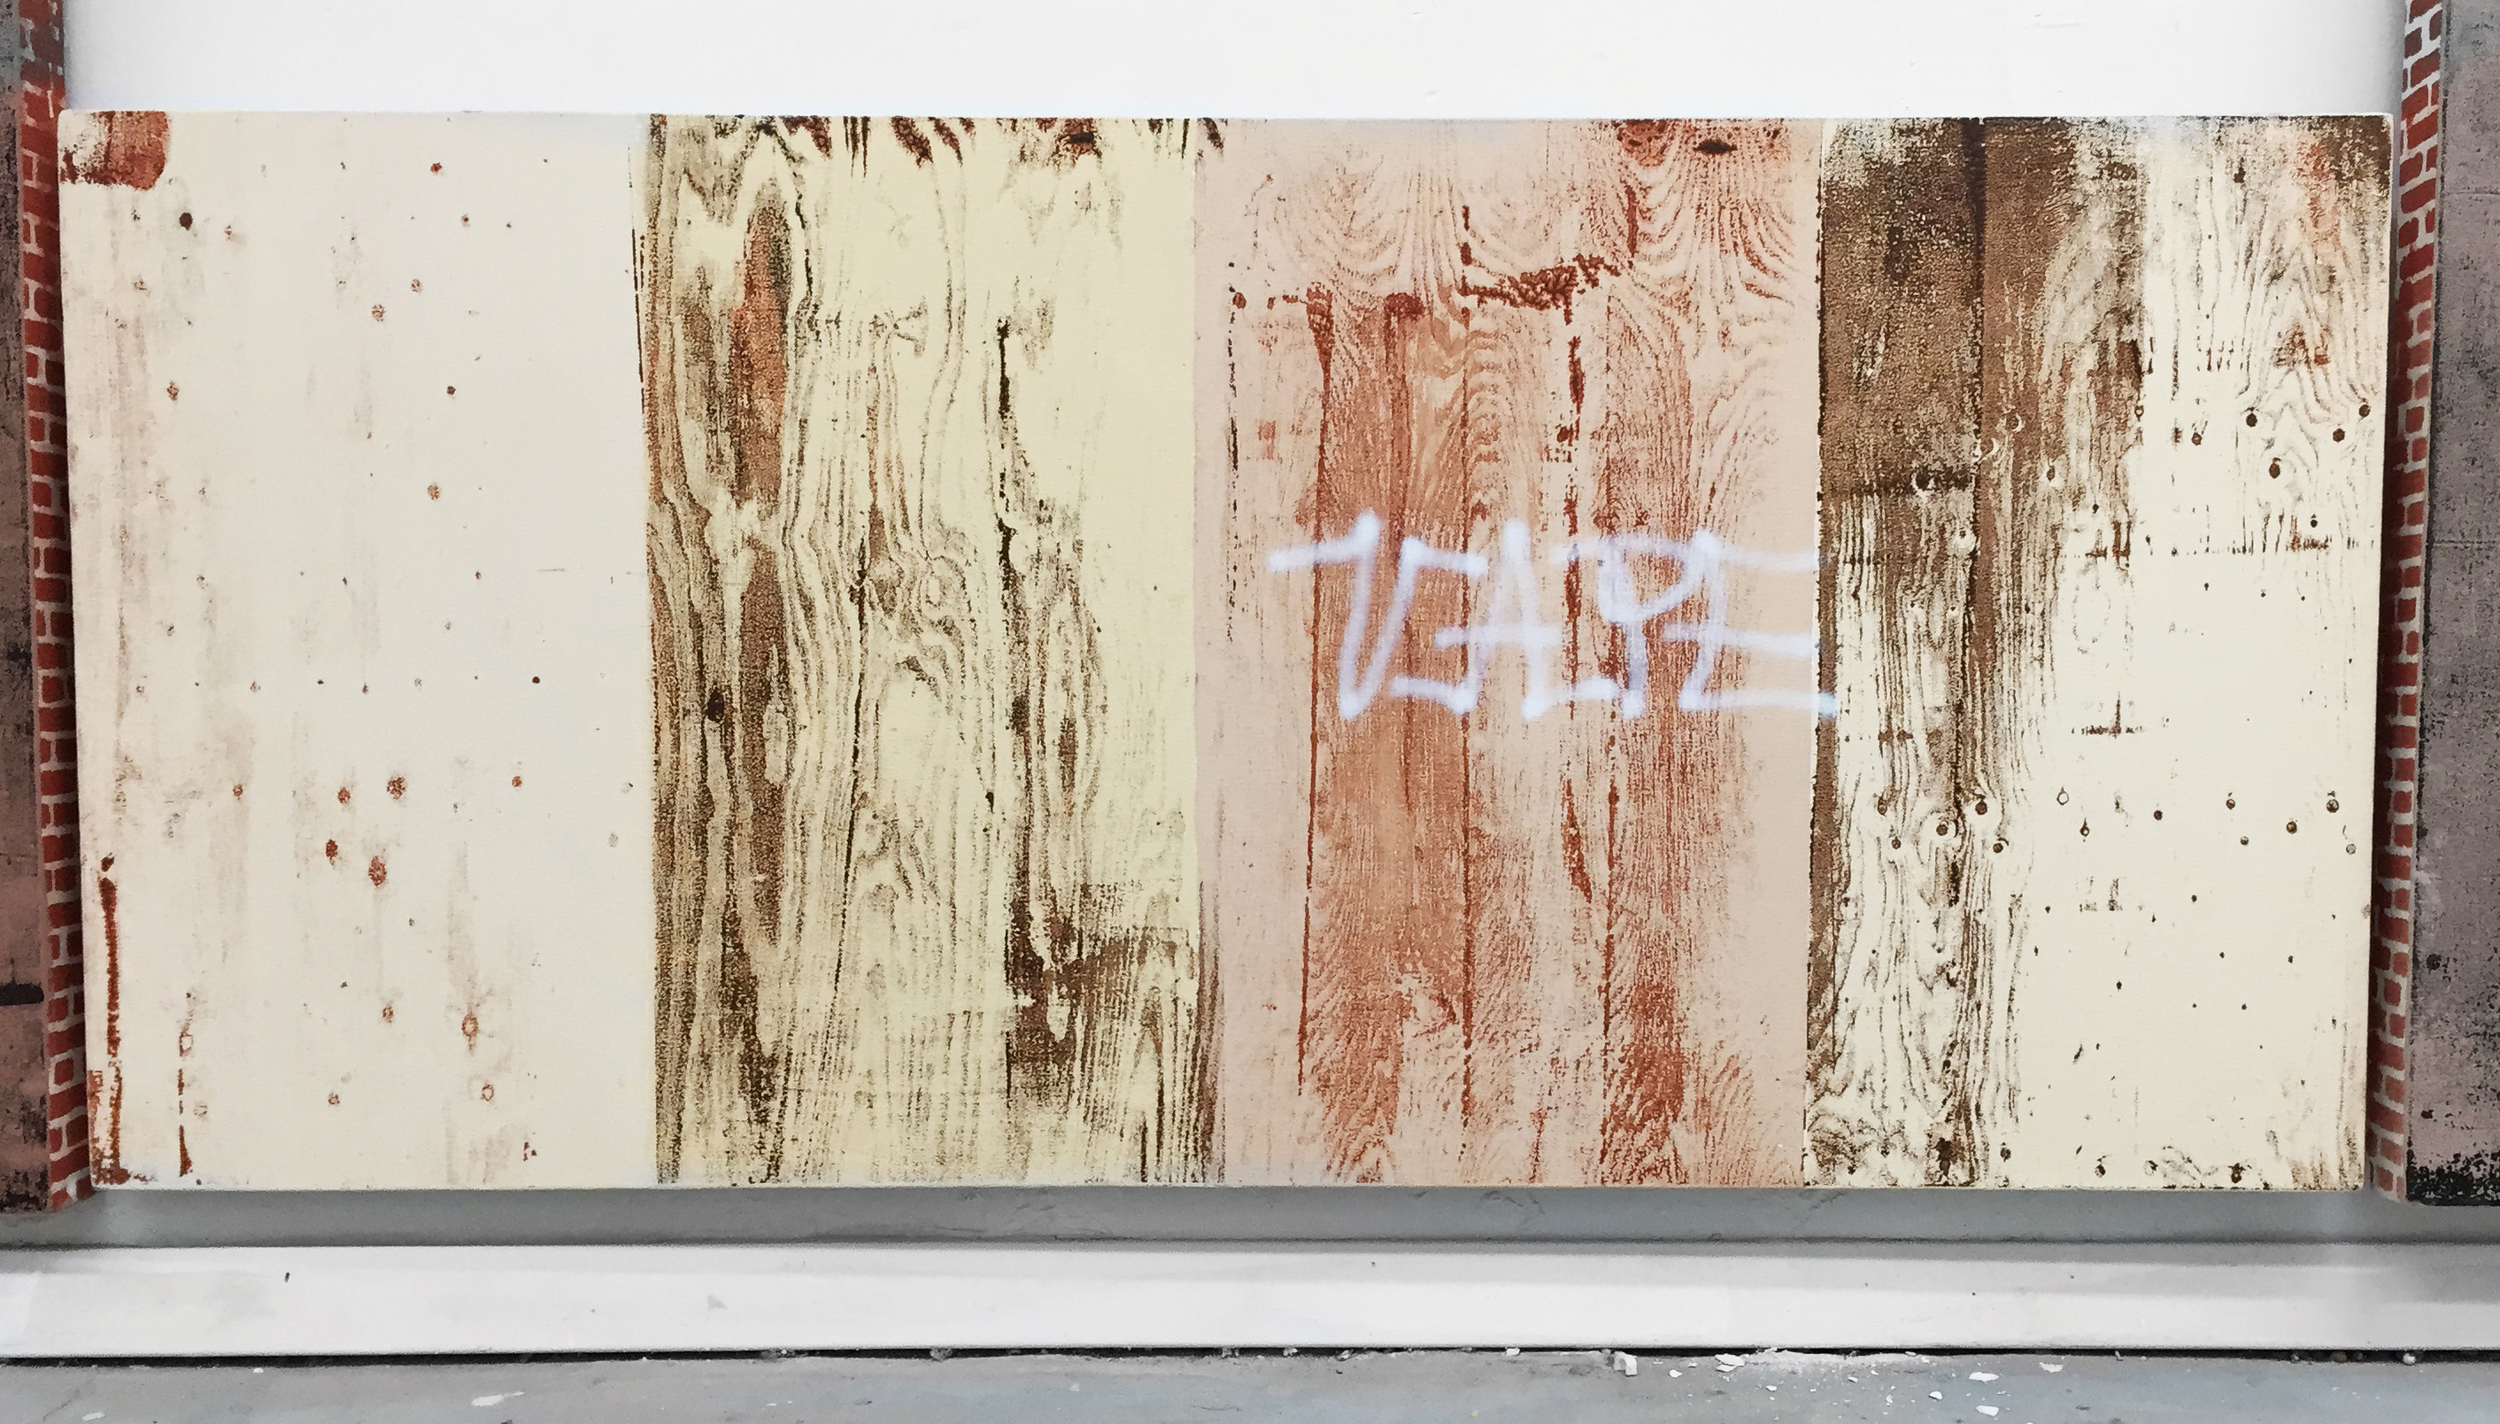  Pentti Monkkonen,&nbsp; Plywood Wall (Vape) , 2014,&nbsp;acrylic on canvas,&nbsp;20 x 43 in 